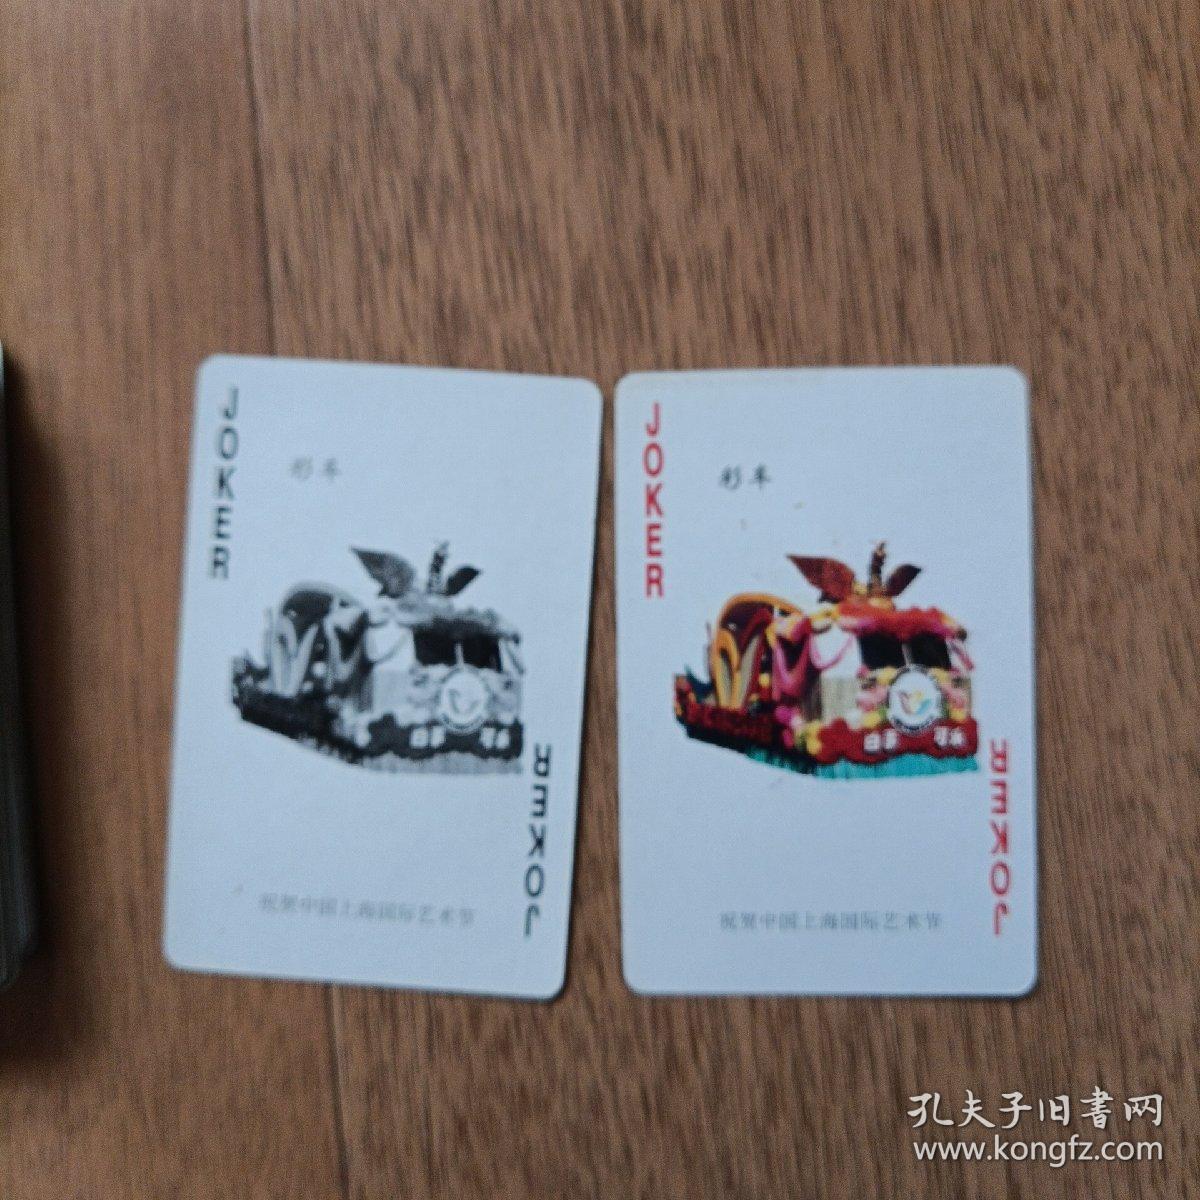 中国上海国际艺术节 纪念珍藏扑克